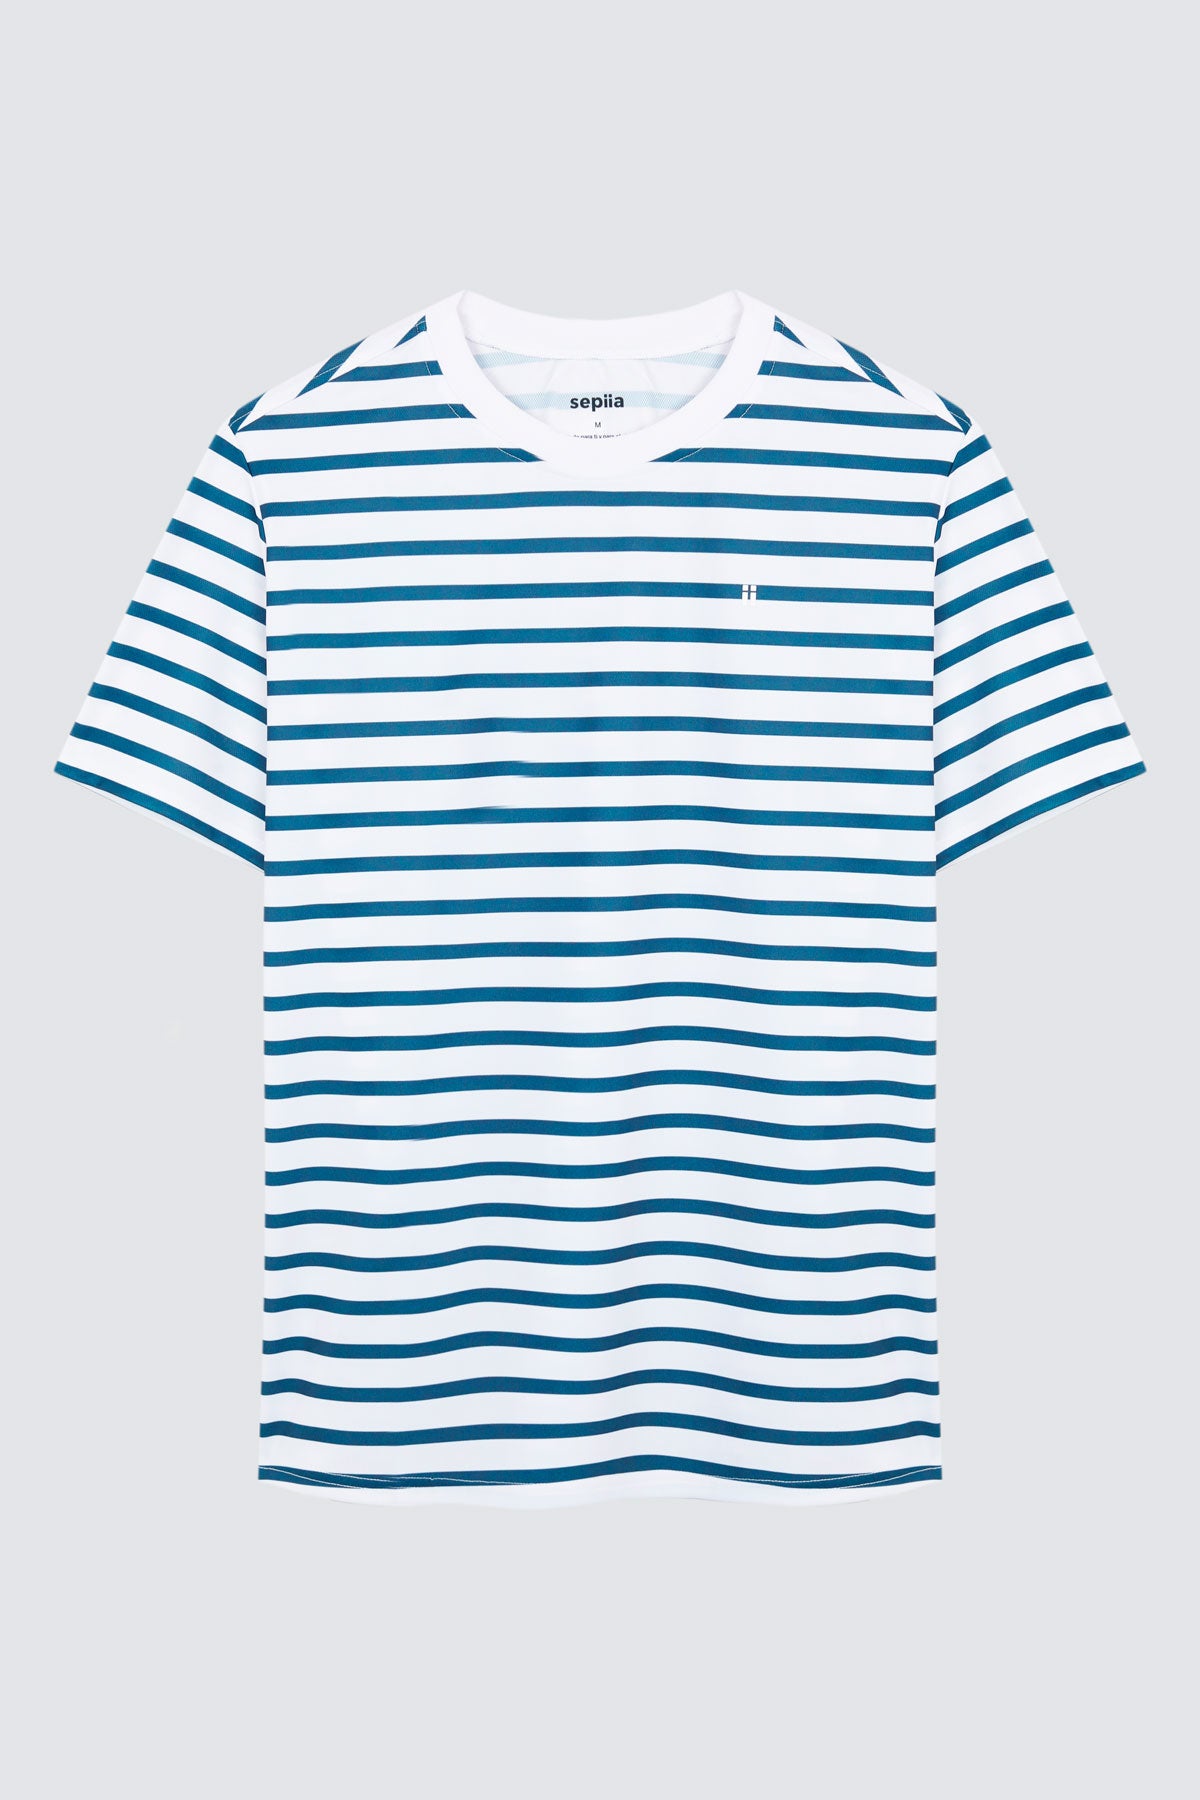 Camiseta de hombre con rayas marino de Sepiia, estilo y versatilidad en una prenda resistente. Foto prenda en plano